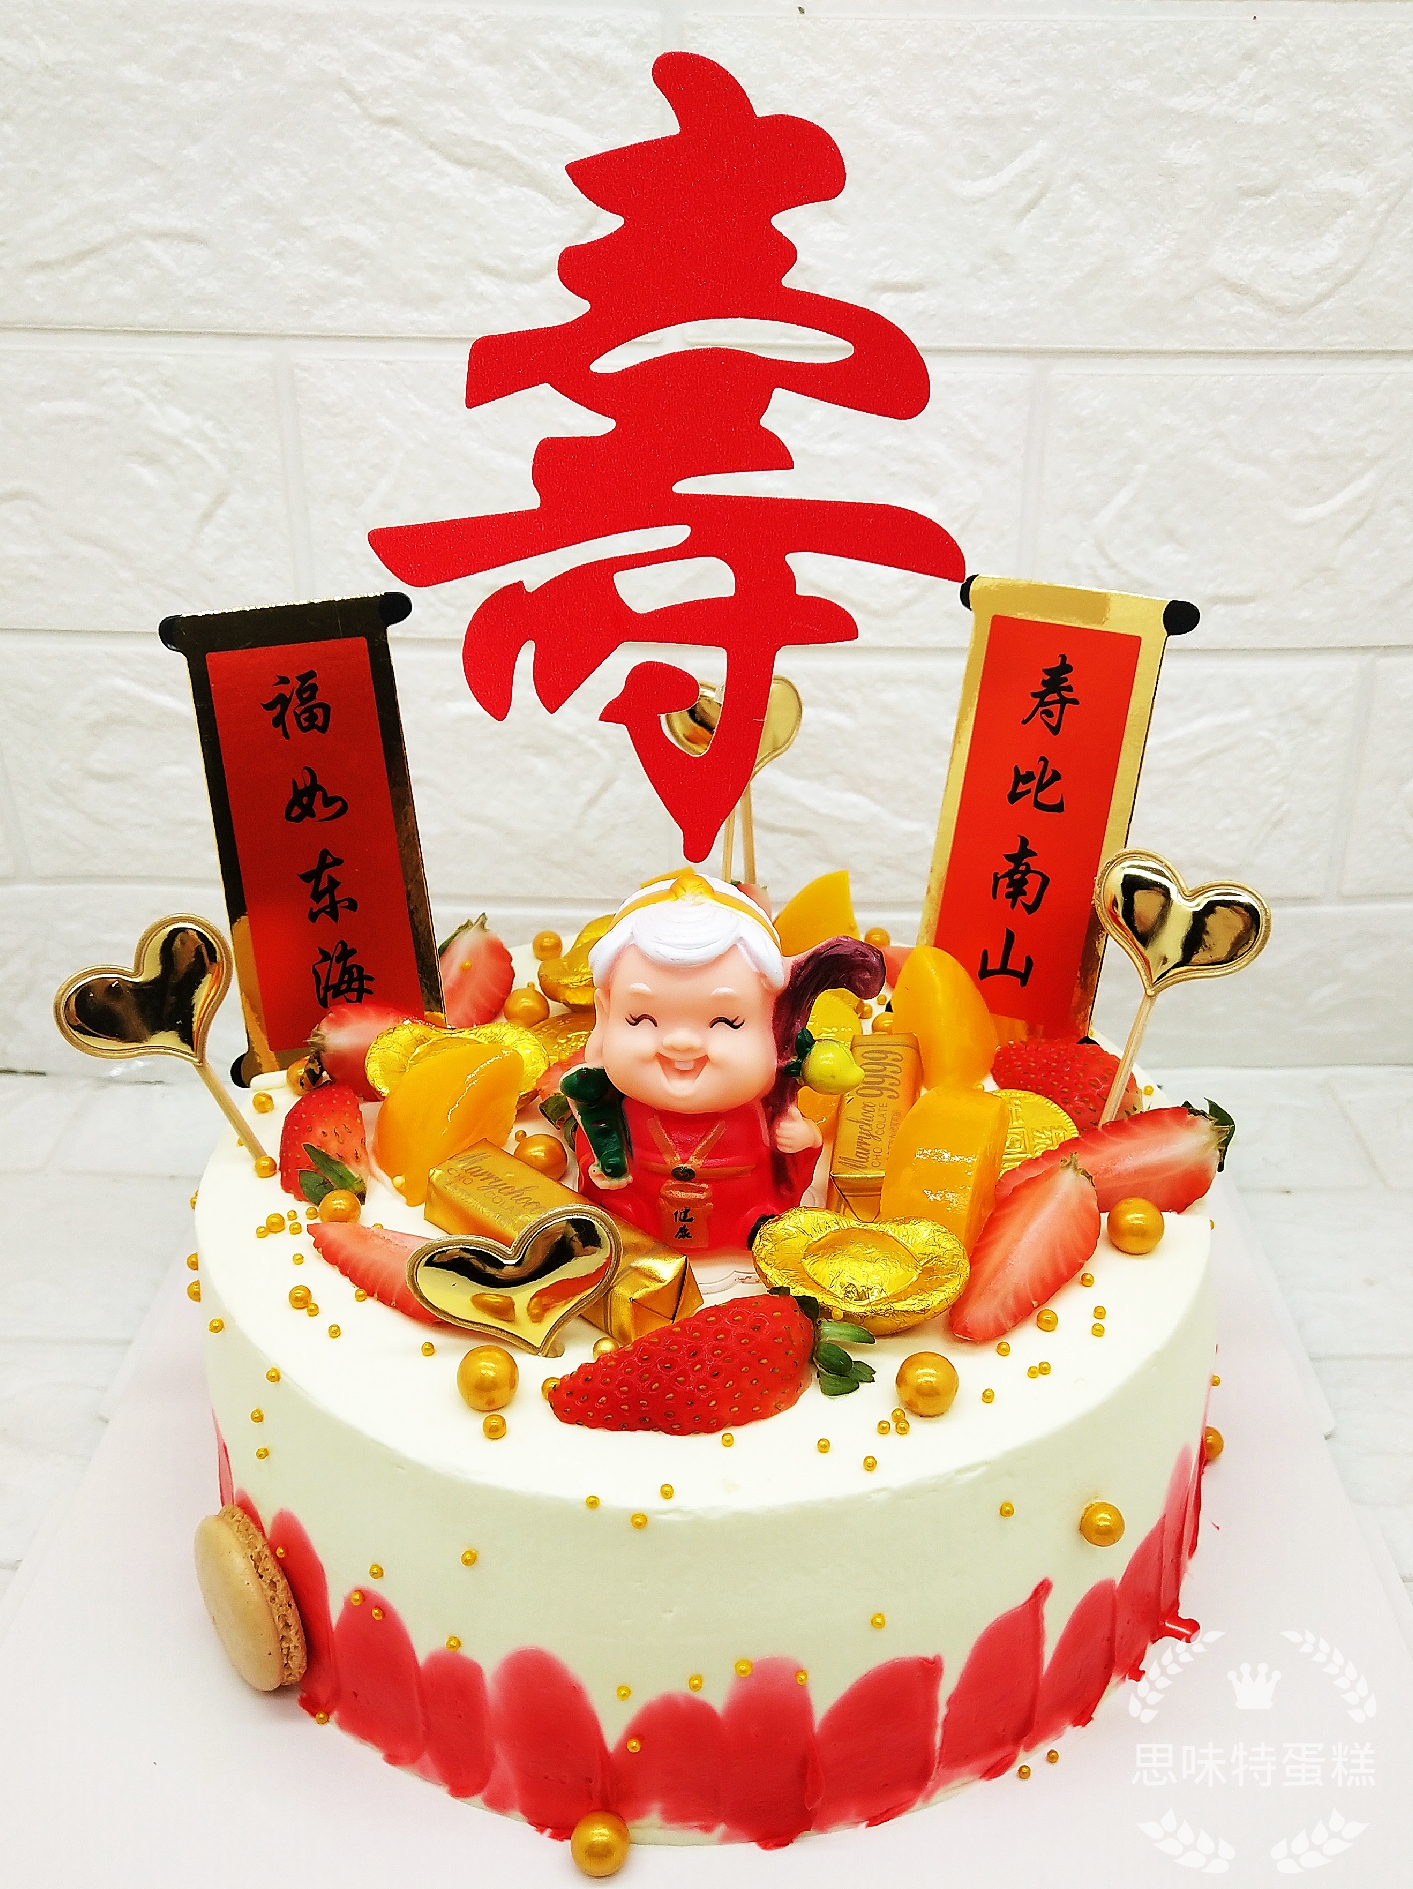 产品中心|生日蛋糕,祝寿蛋糕,节日蛋糕,月饼,西点,结婚蛋糕|红房子蛋糕